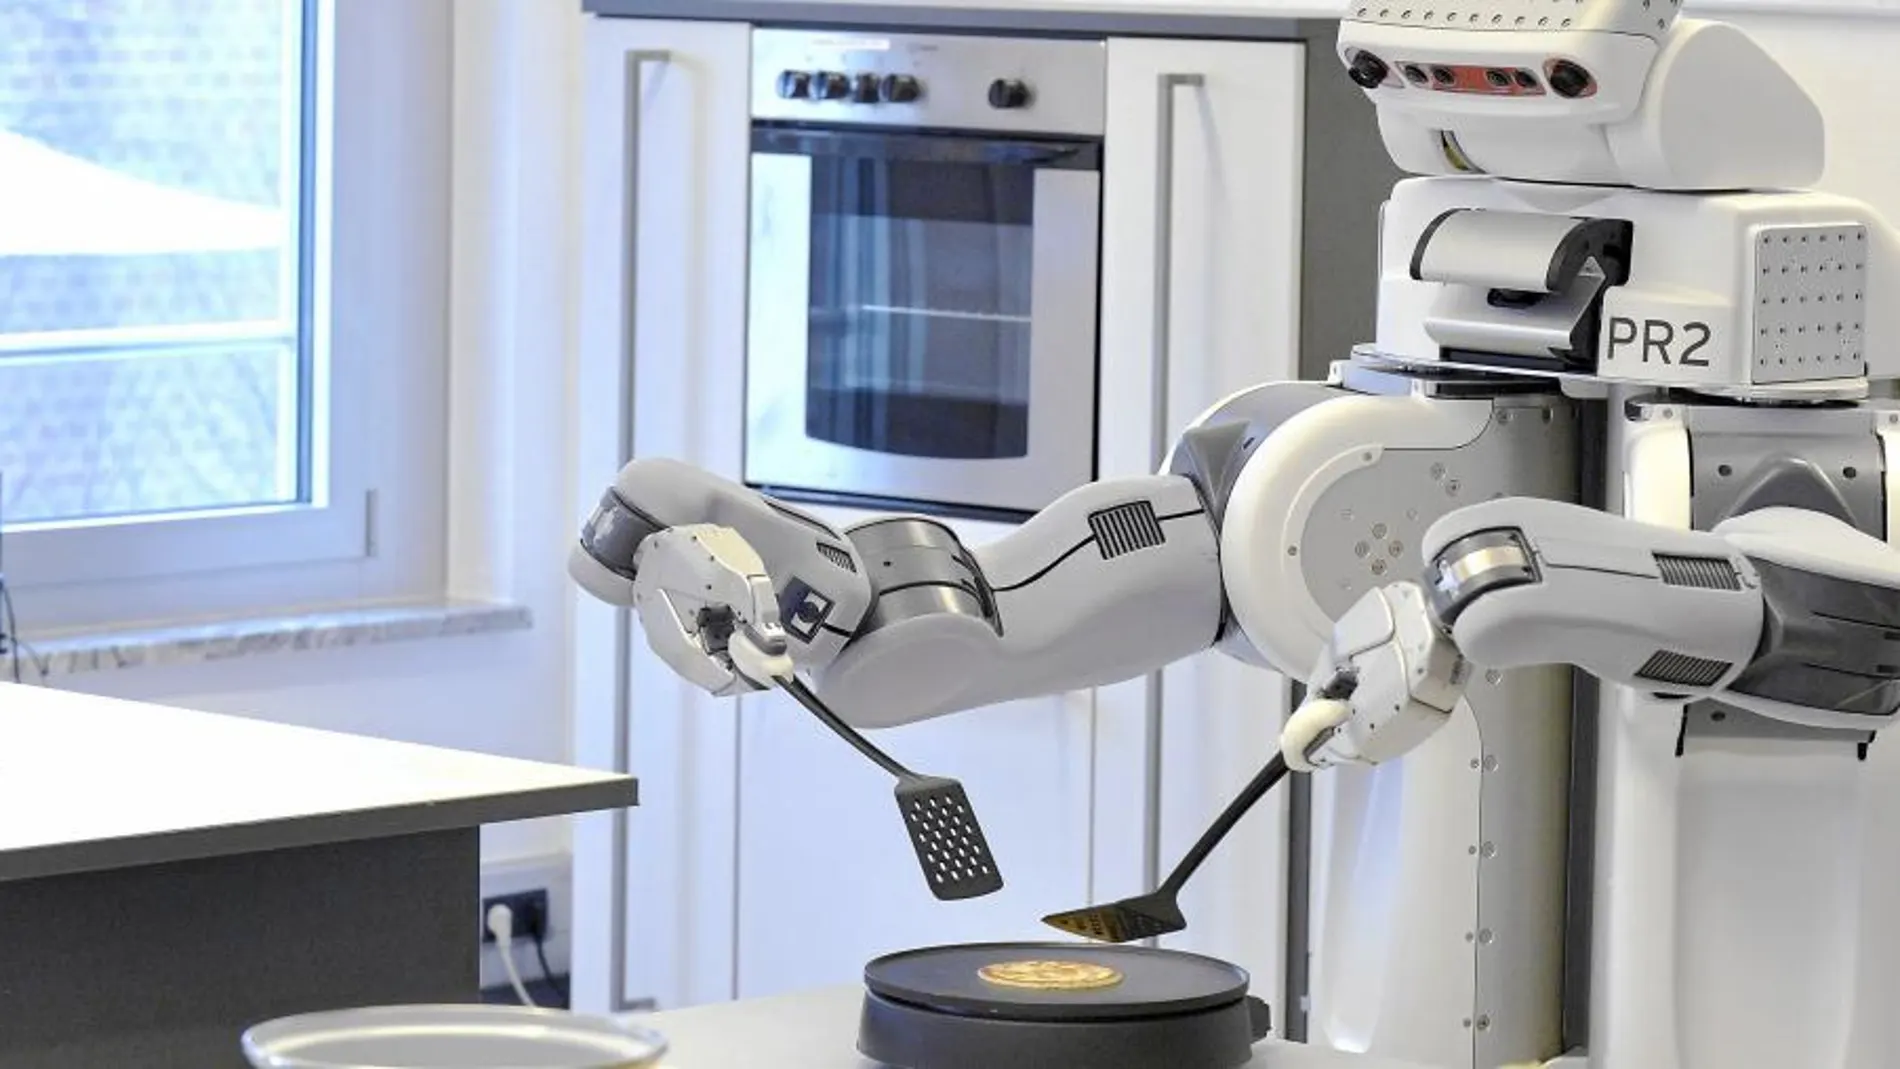 UN PINCHE EN CASA. El robot PR2 prepara una tortita en el Instituto de Inteligencia Artificial de la Universidad de Bremen, en Alemania